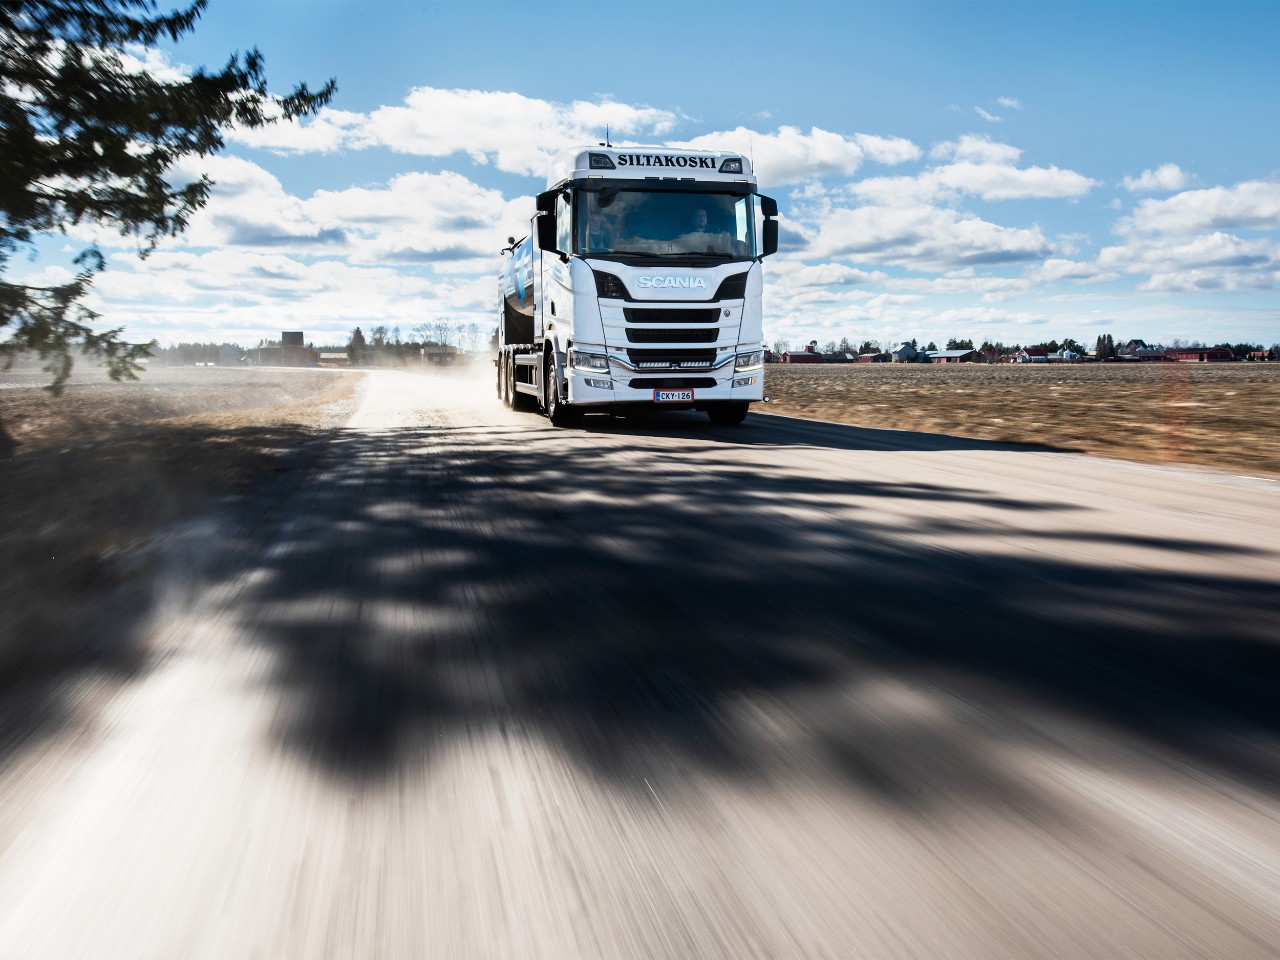 Camion Scania per la raccolta latte. Veicoli per il trasporto agricolo e di bestiame